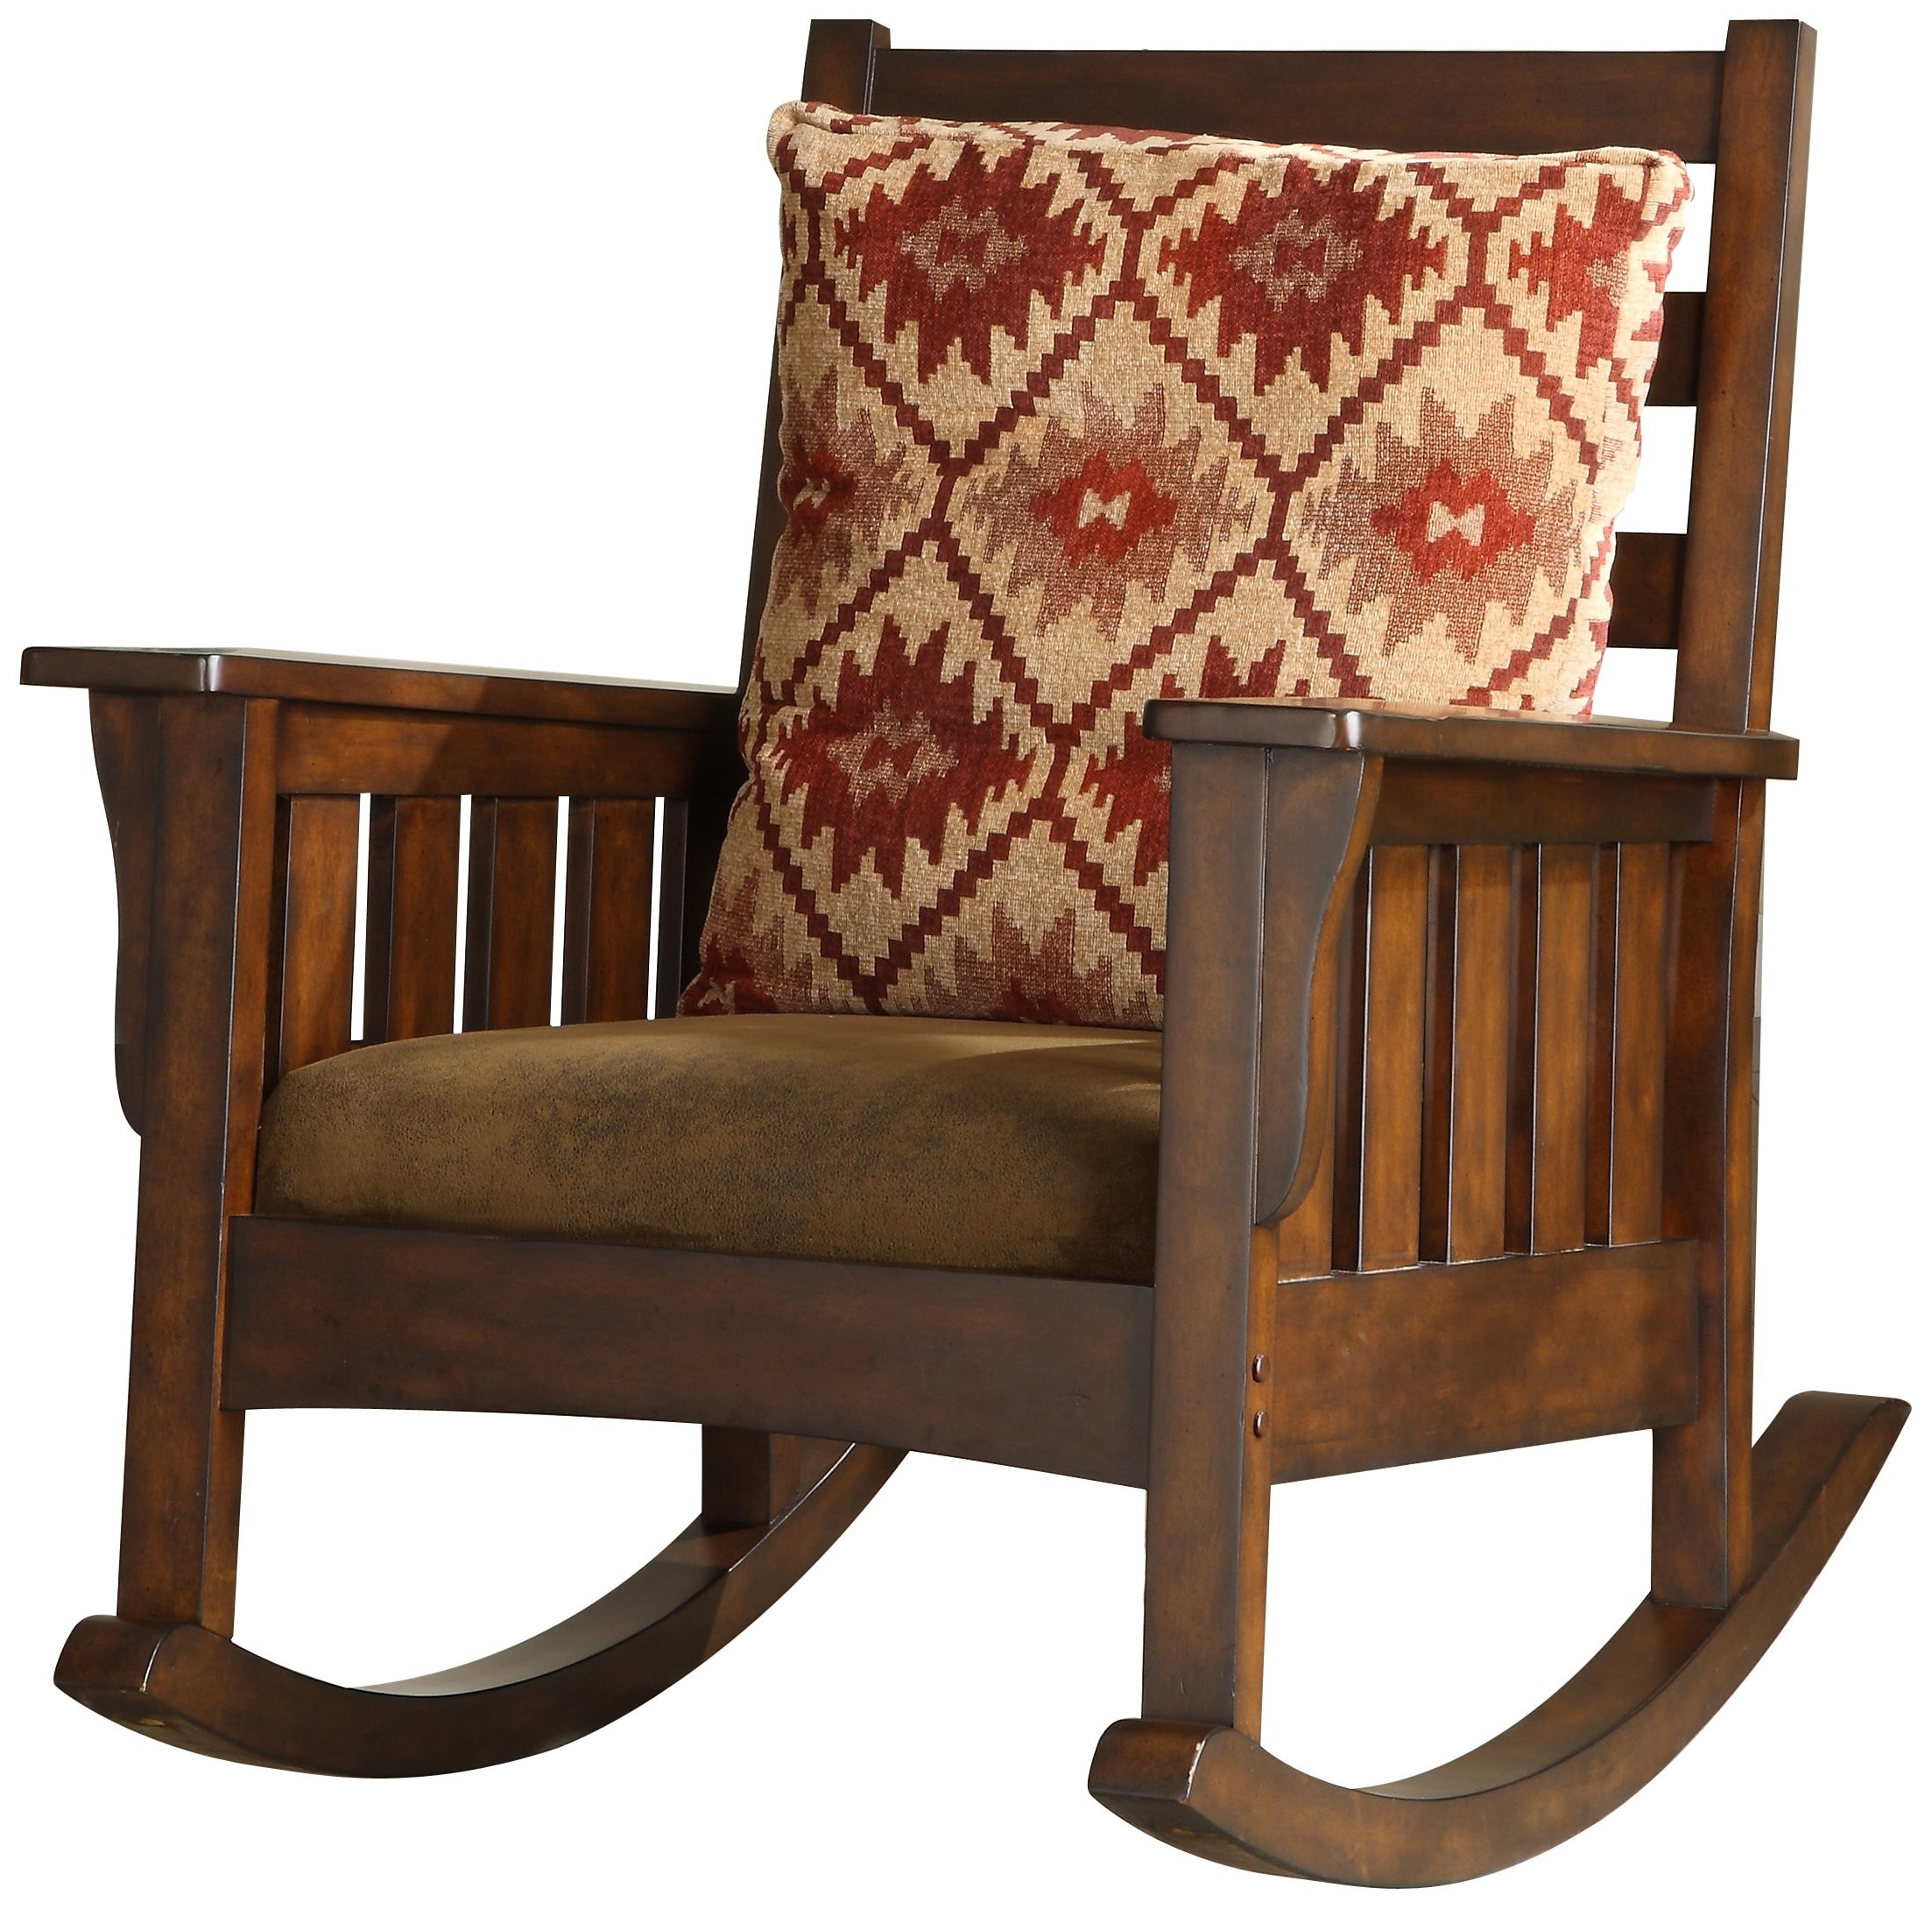 Furniture of America Oria Rocking Chair, Dark Oak